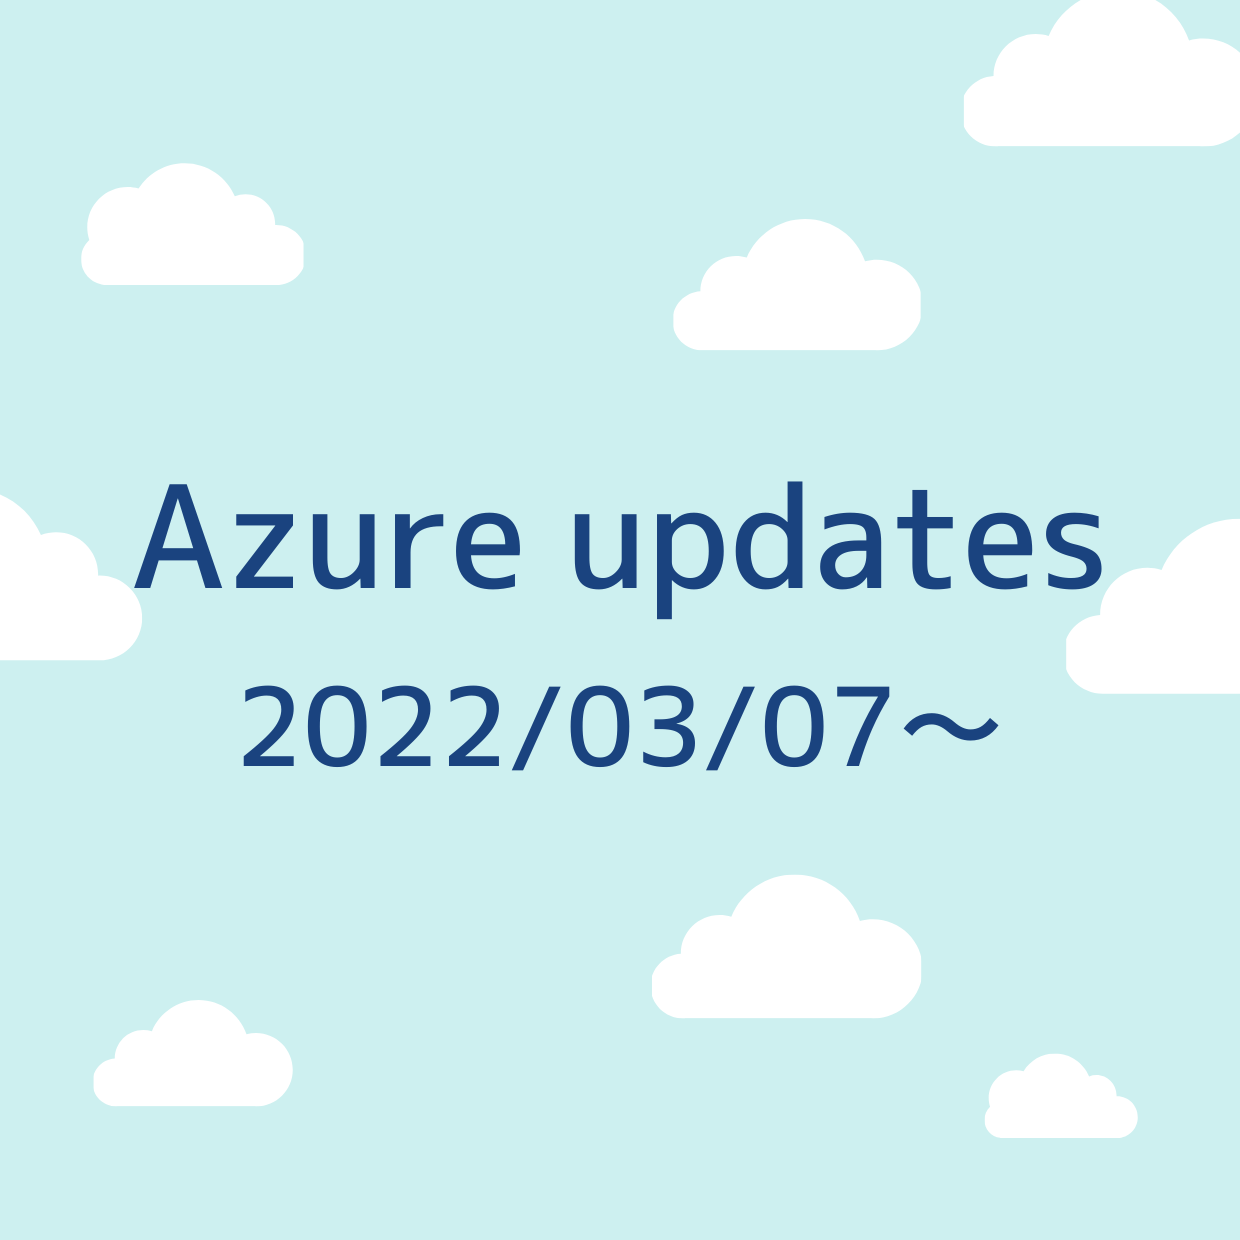 2022/03/07 週の Azure updates 日本語速報